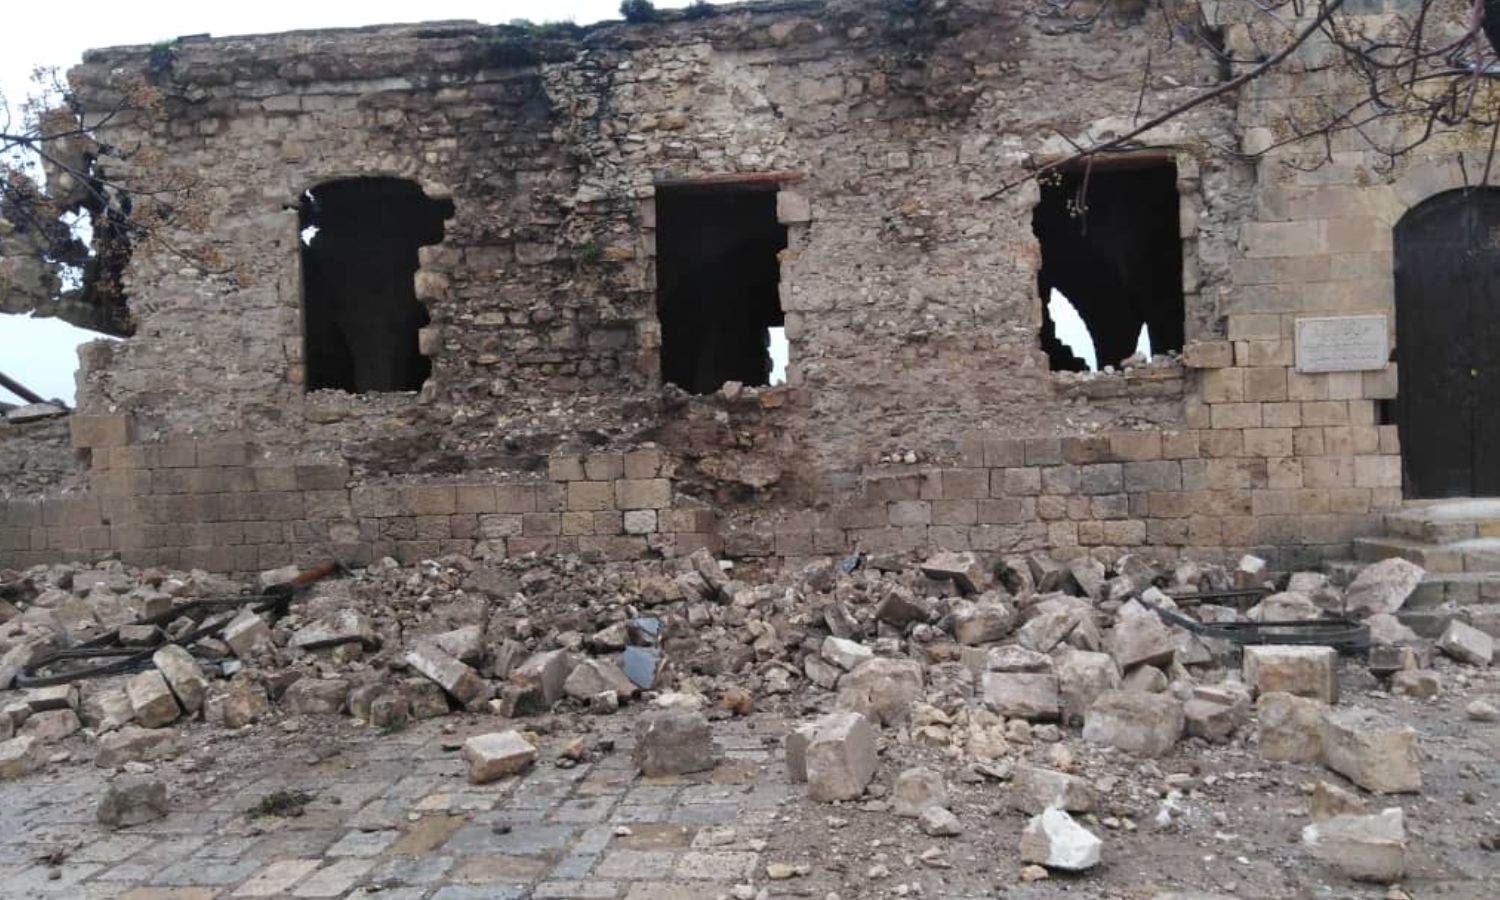 أحد المواقع الأثرية المتضررة في محافظة حلب شمال غربي سوريا جراء الزلزال- 23 شباط 2023 (المديرية العامة للآثار والمتاحف/ فيس بوك)